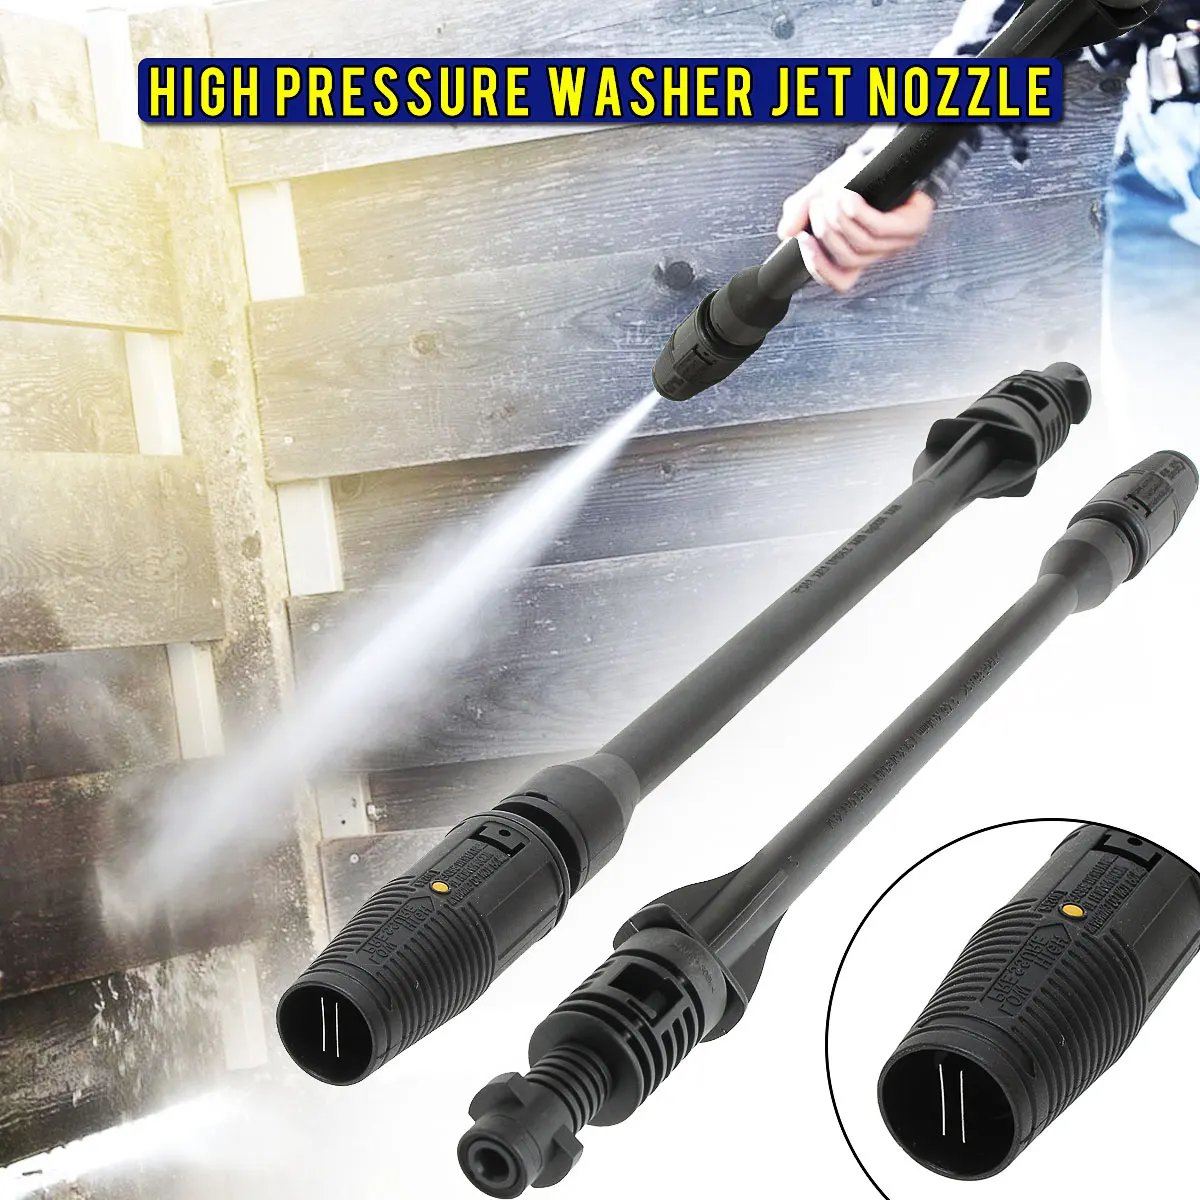 

Pressure Washer Car Washer Adjustable Jet Lance Wand Spear Nozzle Tip for Karcher K1 K2 K3 K4 K5 K6 K7 High Pressure Washers